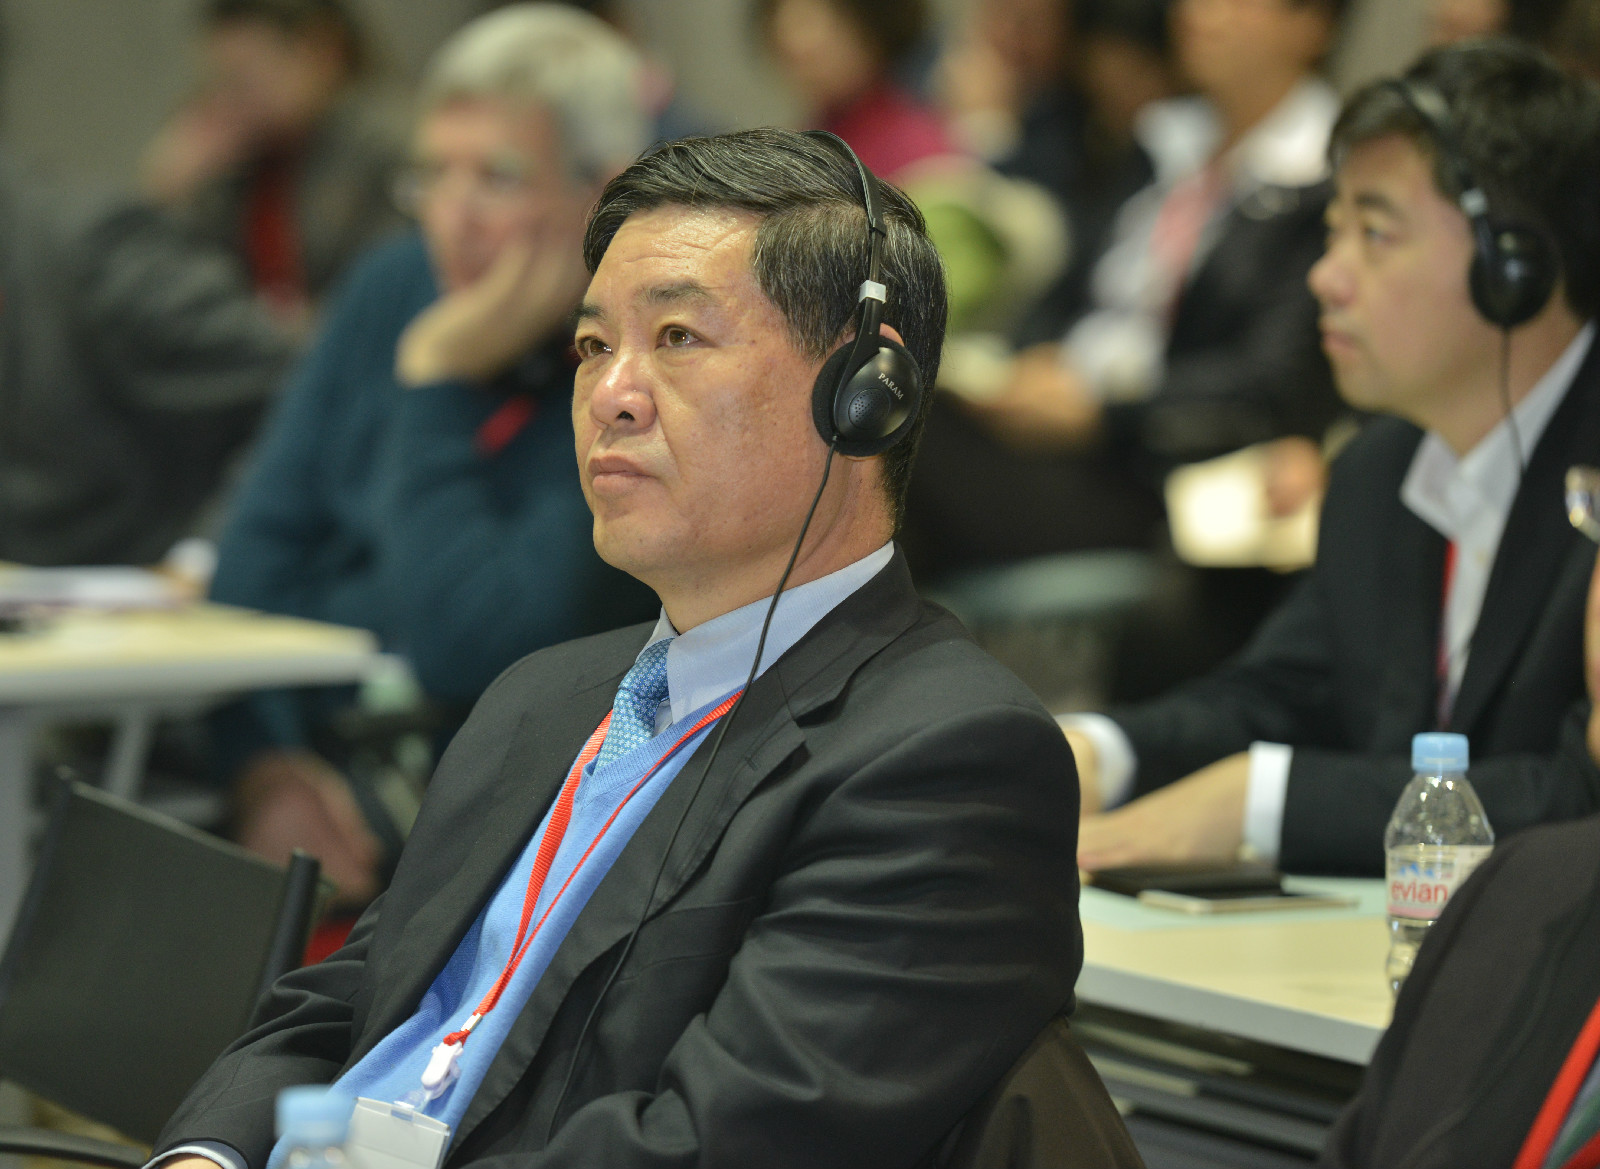 三亞市副市長 李柏青 出席未來新經濟峰會